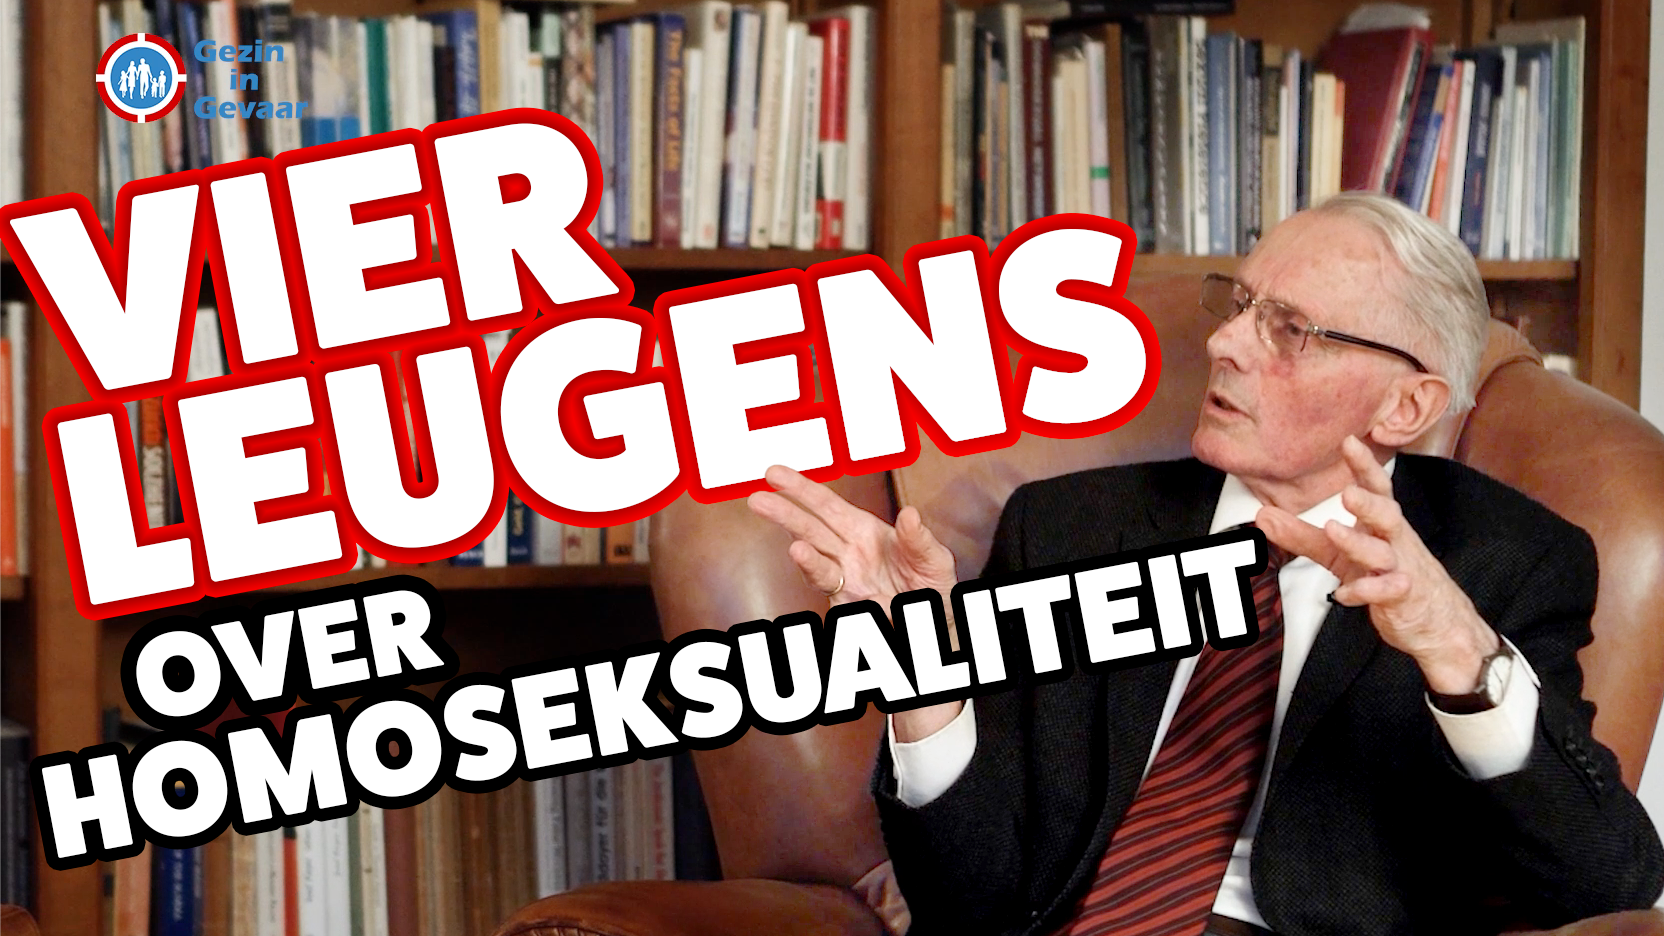 Kijken: 4 leugens over homoseksualiteit met dr. Van den Aardweg